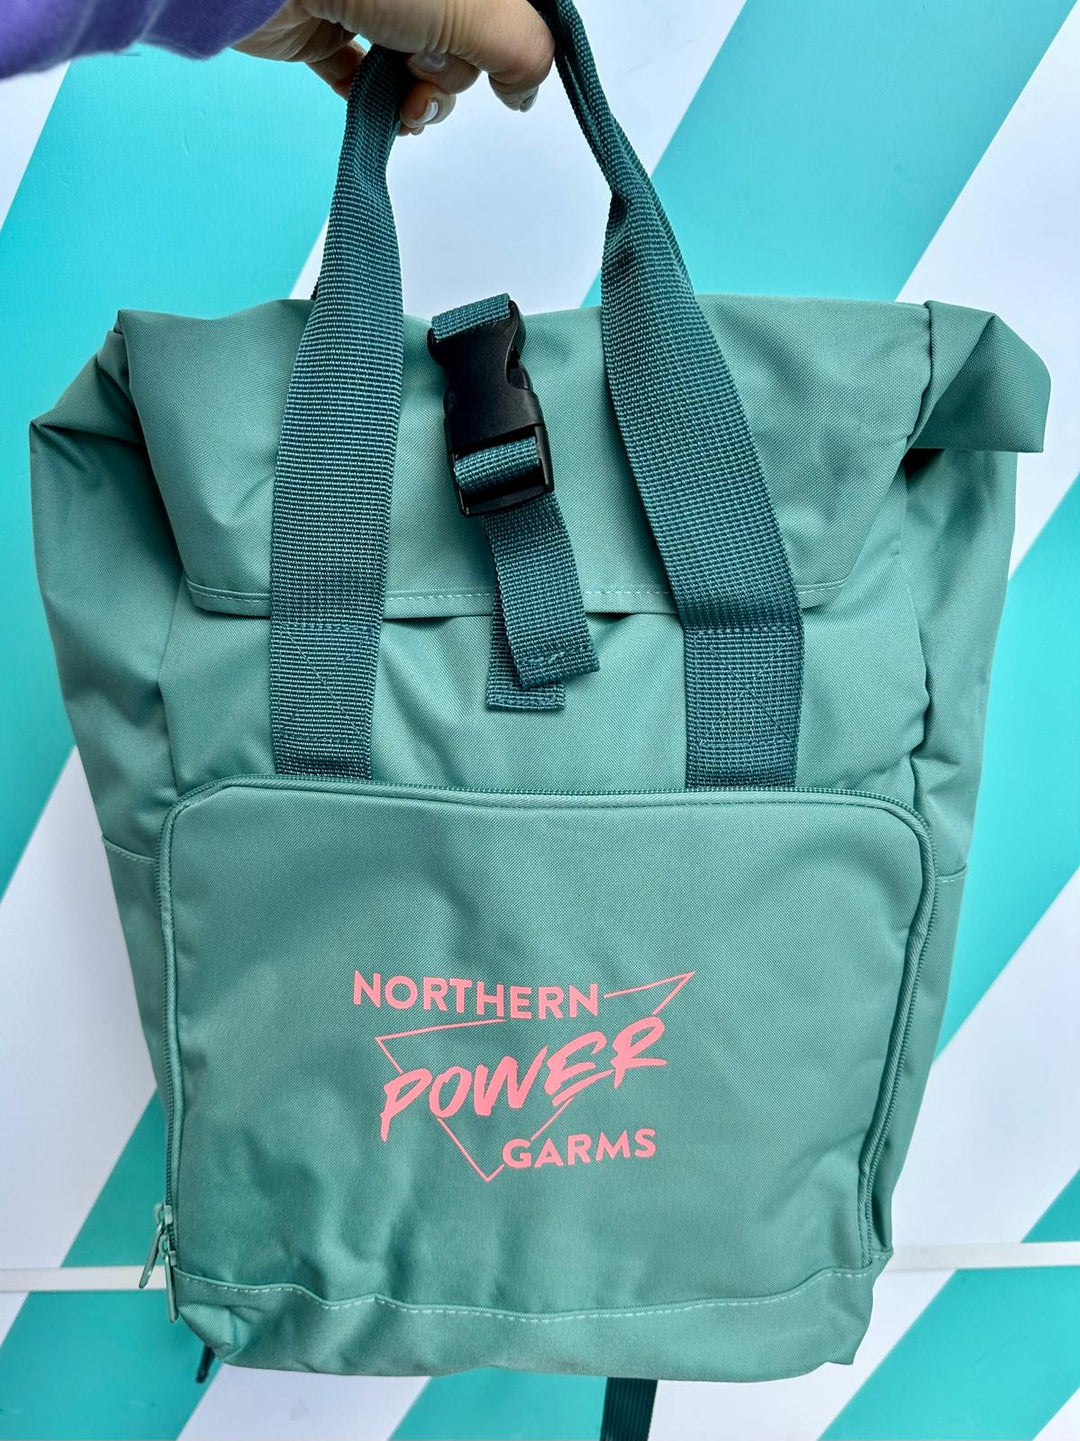 NPG Roll-Top Rucksack Bag